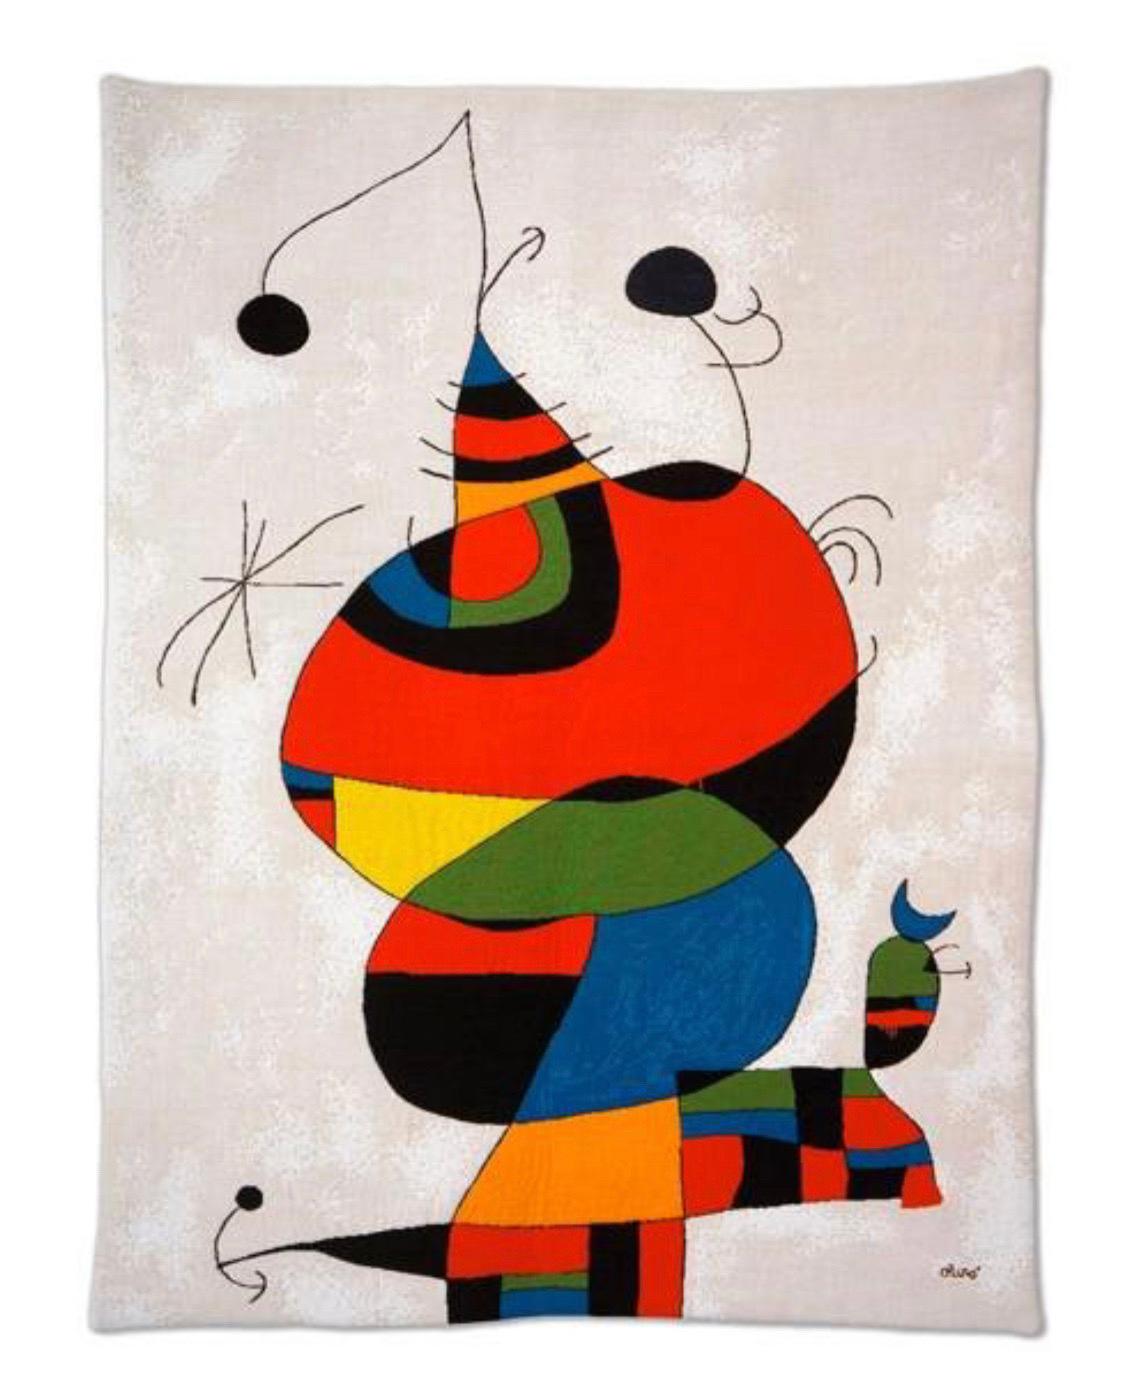 Il s'agit d'une belle et grande tapisserie de Joan Miró.  Il a fait traduire plusieurs de ses peintures en tapisserie et en tapis.  Ce magnifique exemple est une représentation tissée de la peinture 